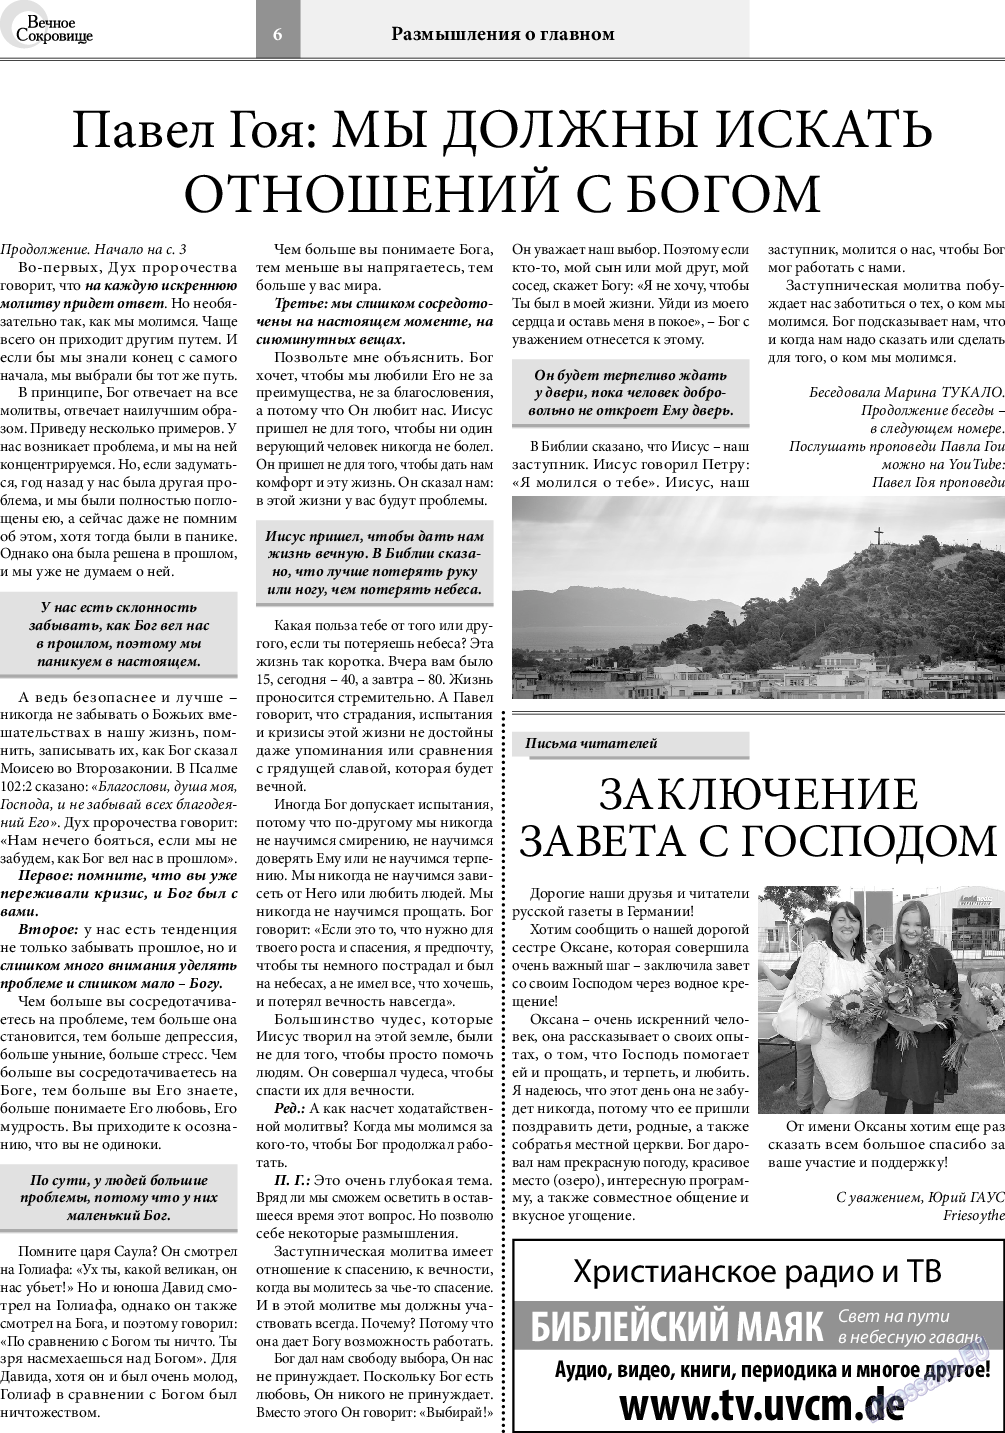 Вечное сокровище (газета). 2021 год, номер 4, стр. 6